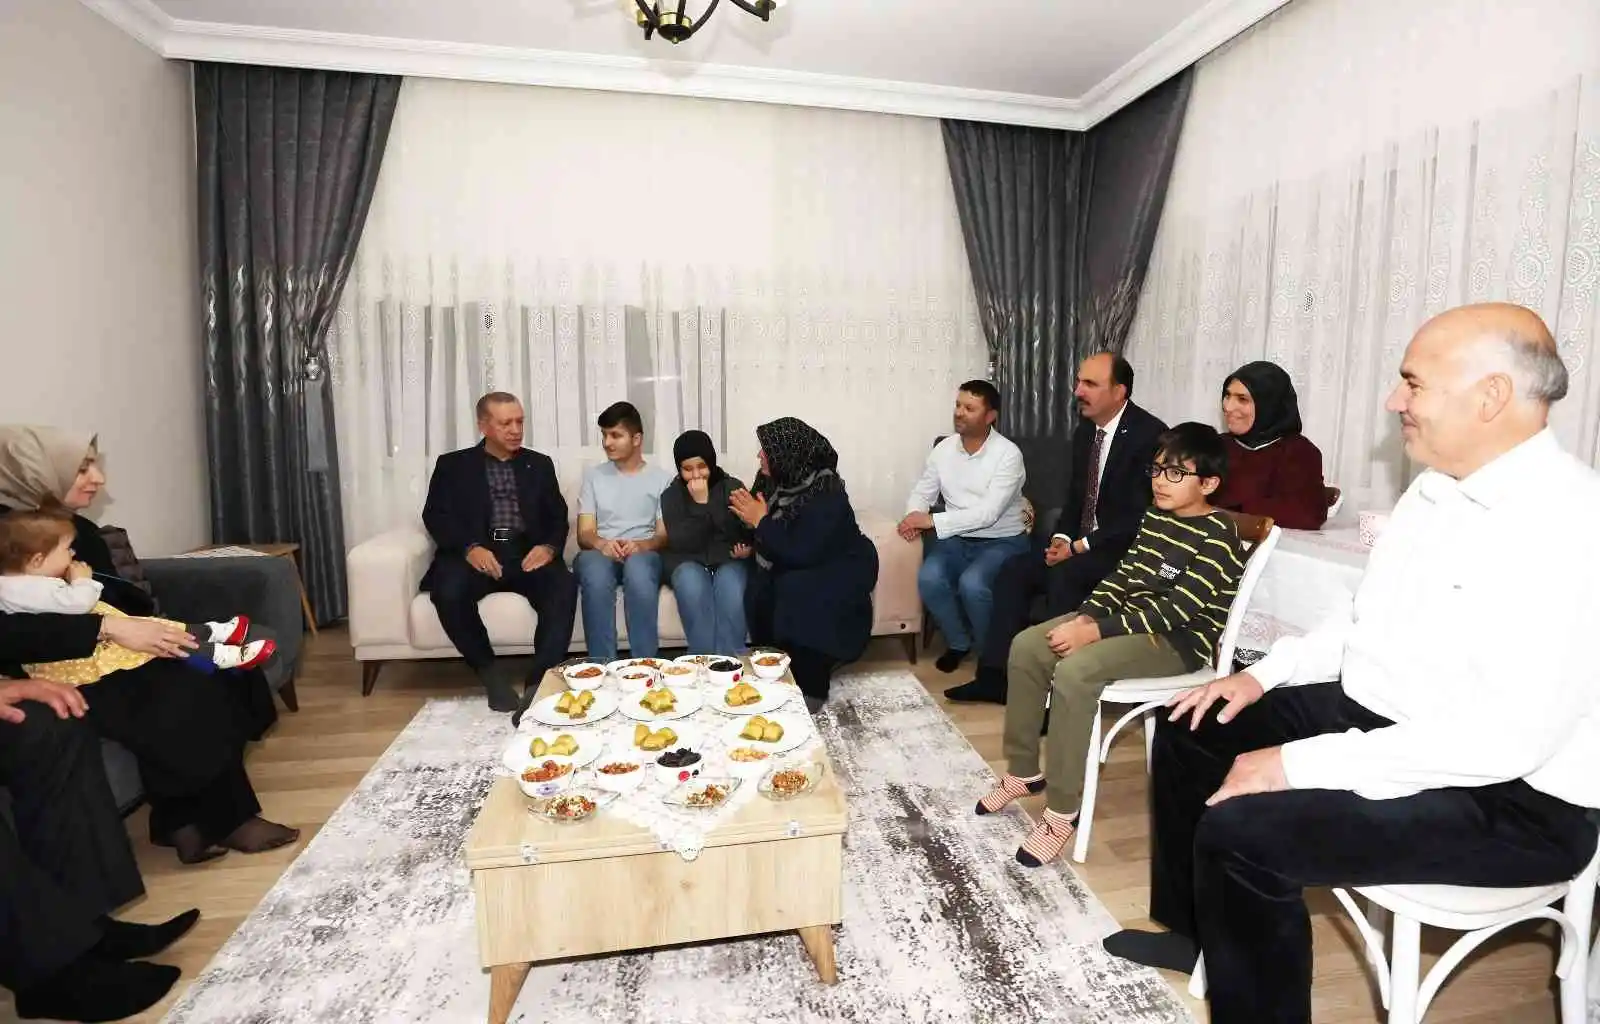 Cumhurbaşkanı Erdoğan, görme engelli hafız Ravzanur’u evinde ziyaret edip çay içti
